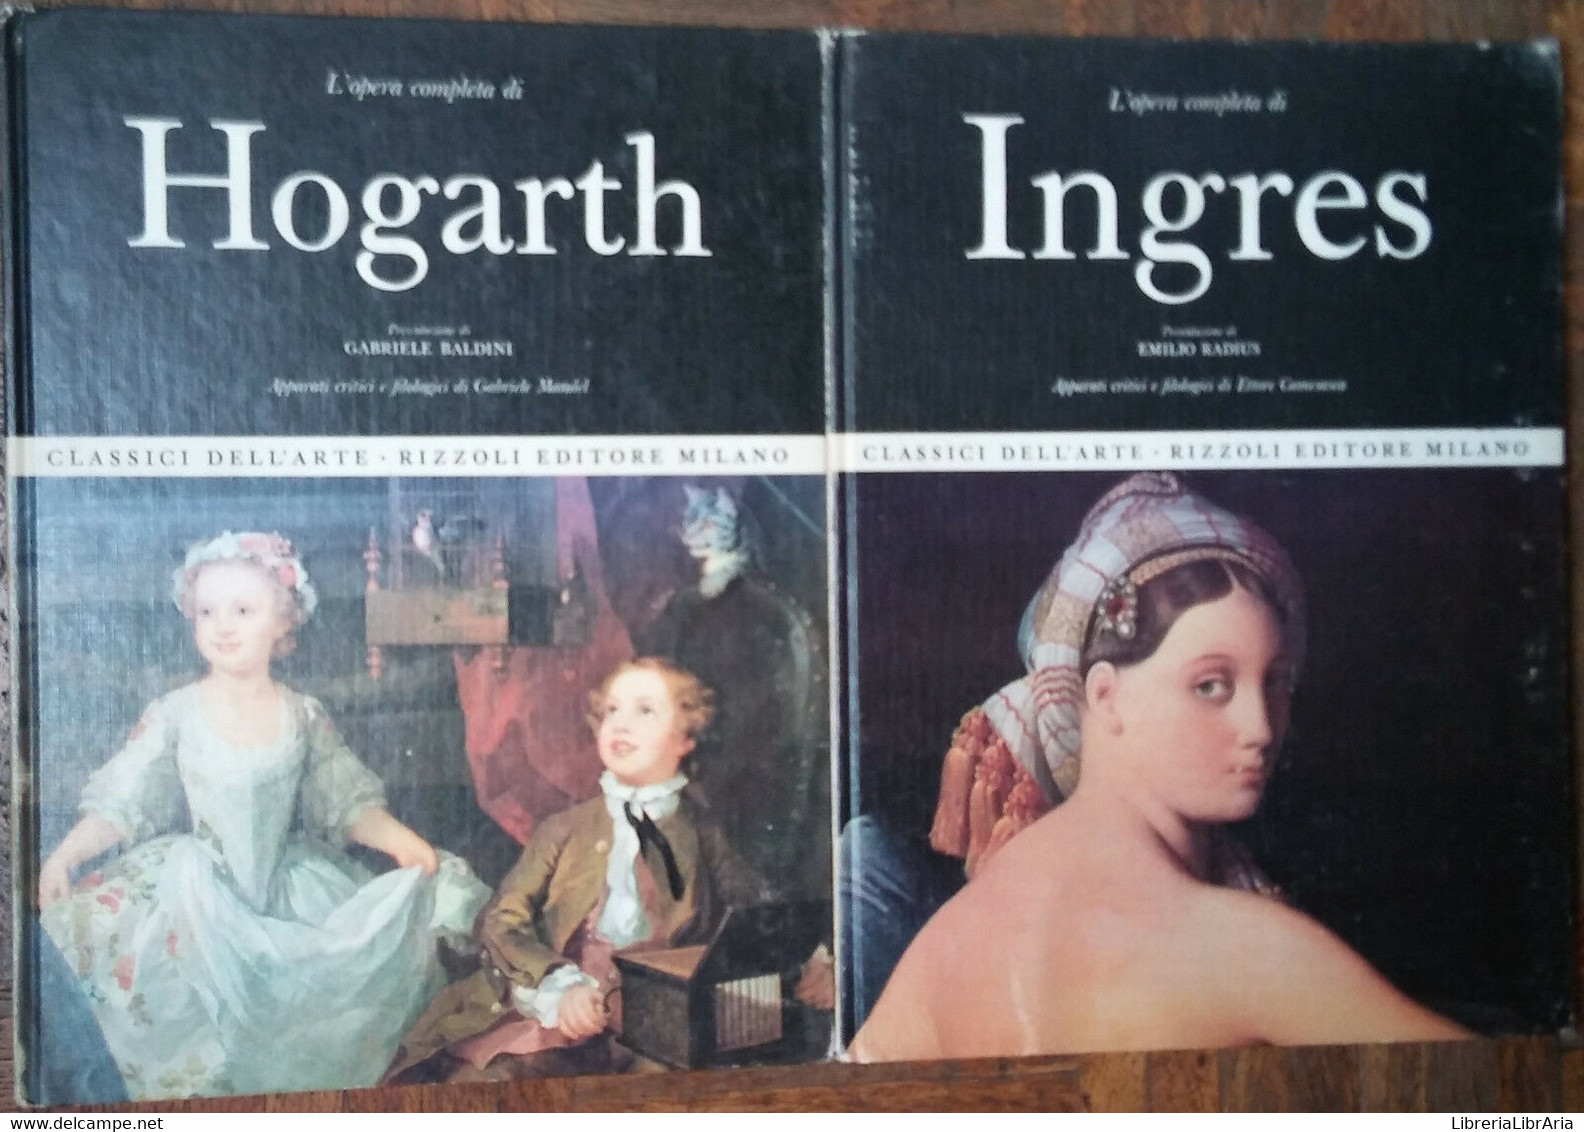 L’opera Completa Di Ingres;L’opera Completa Di Hogarth-AA.VV.-Rizzoli Editore-R - Arts, Architecture